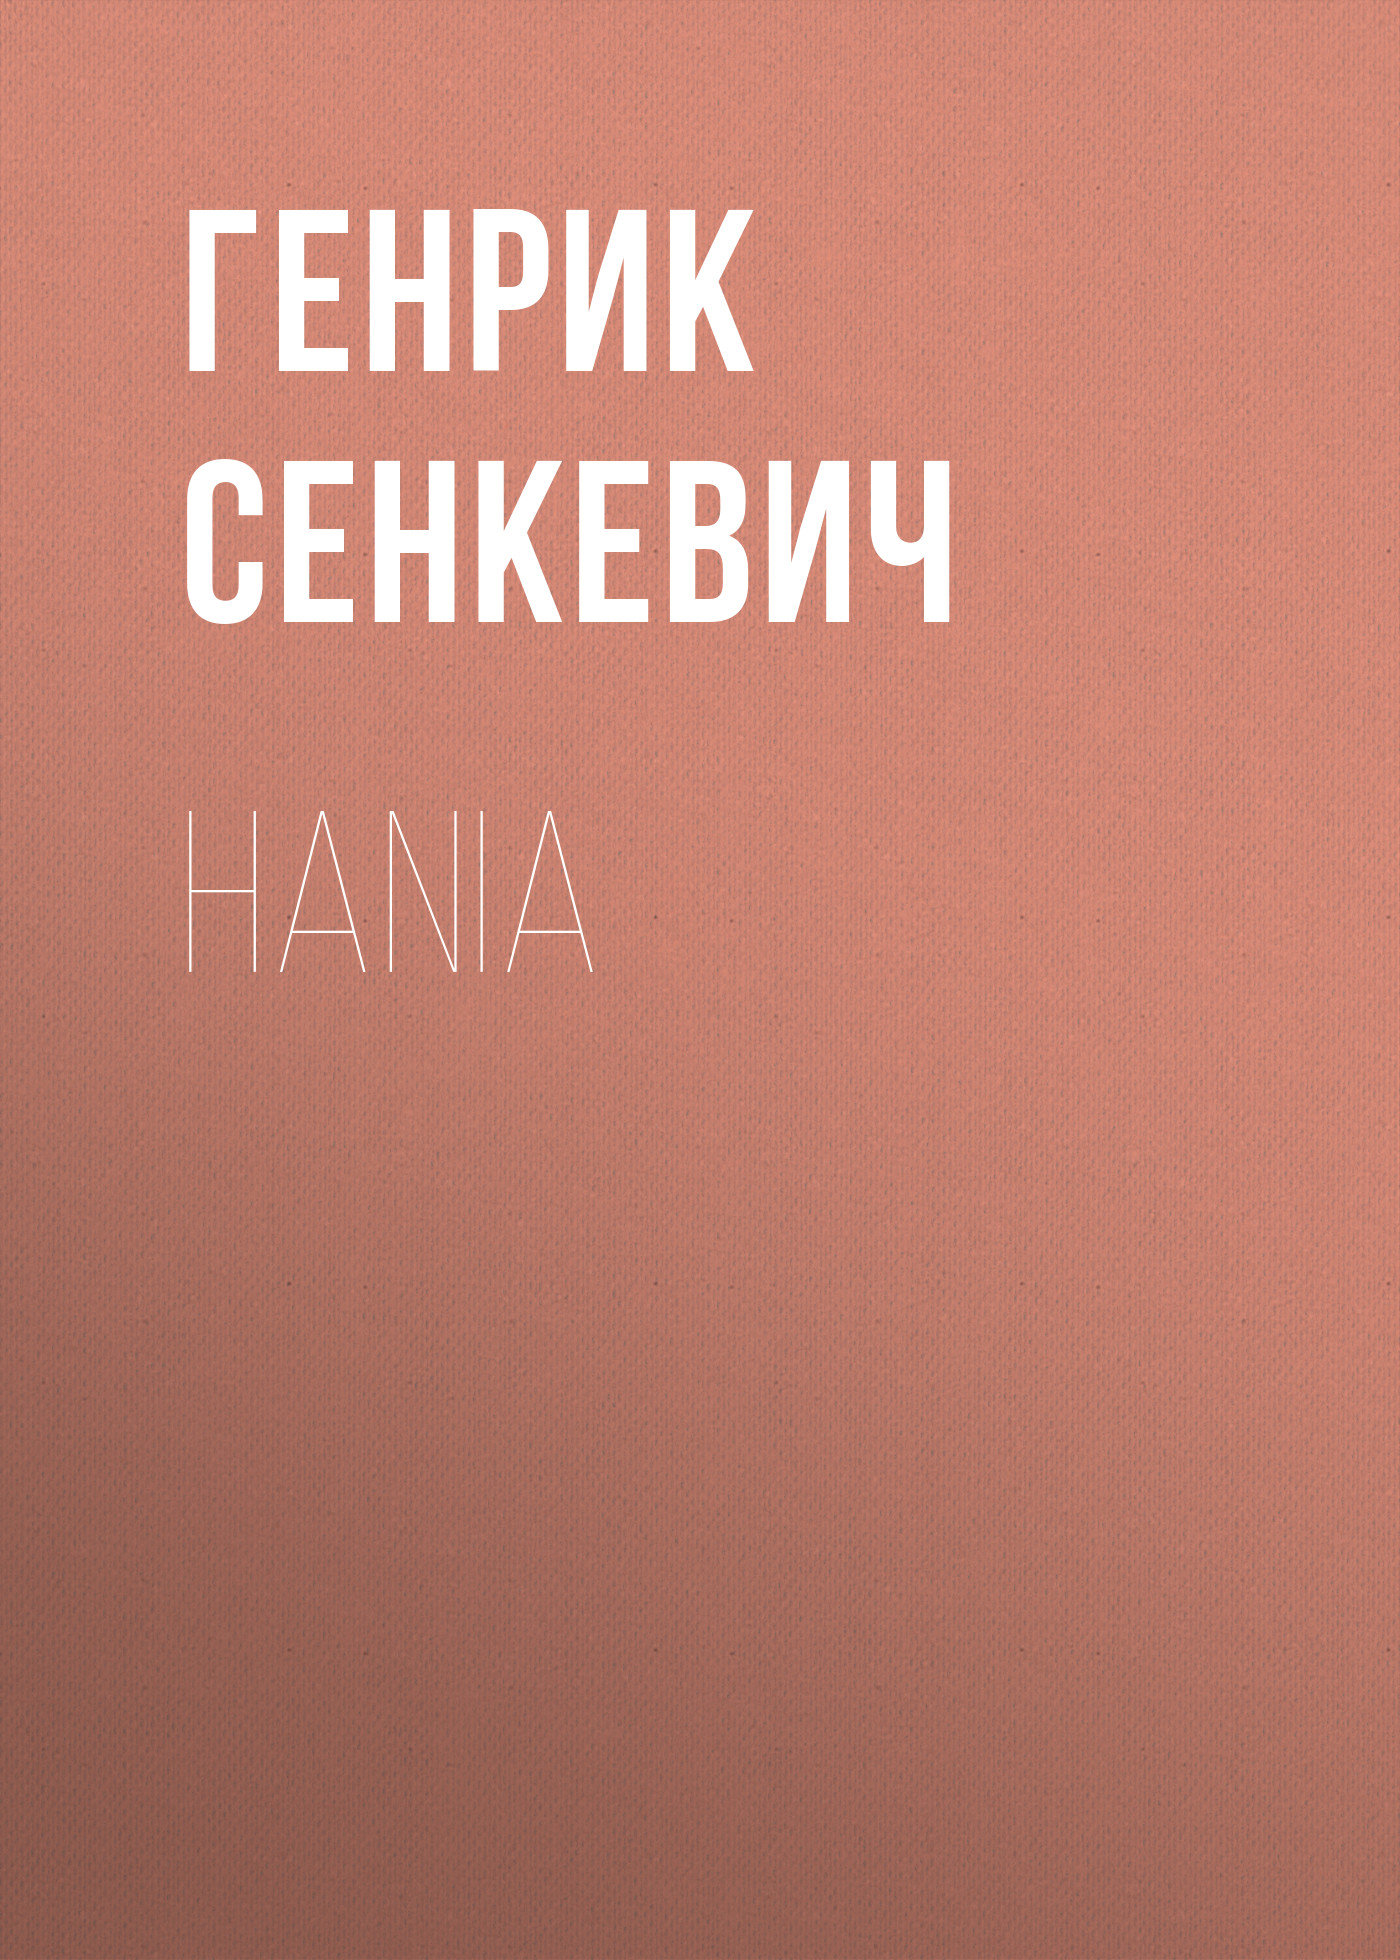 Книга Hania из серии , созданная Генрик Сенкевич, может относится к жанру Зарубежная старинная литература, Зарубежная классика. Стоимость электронной книги Hania с идентификатором 25476479 составляет 0 руб.